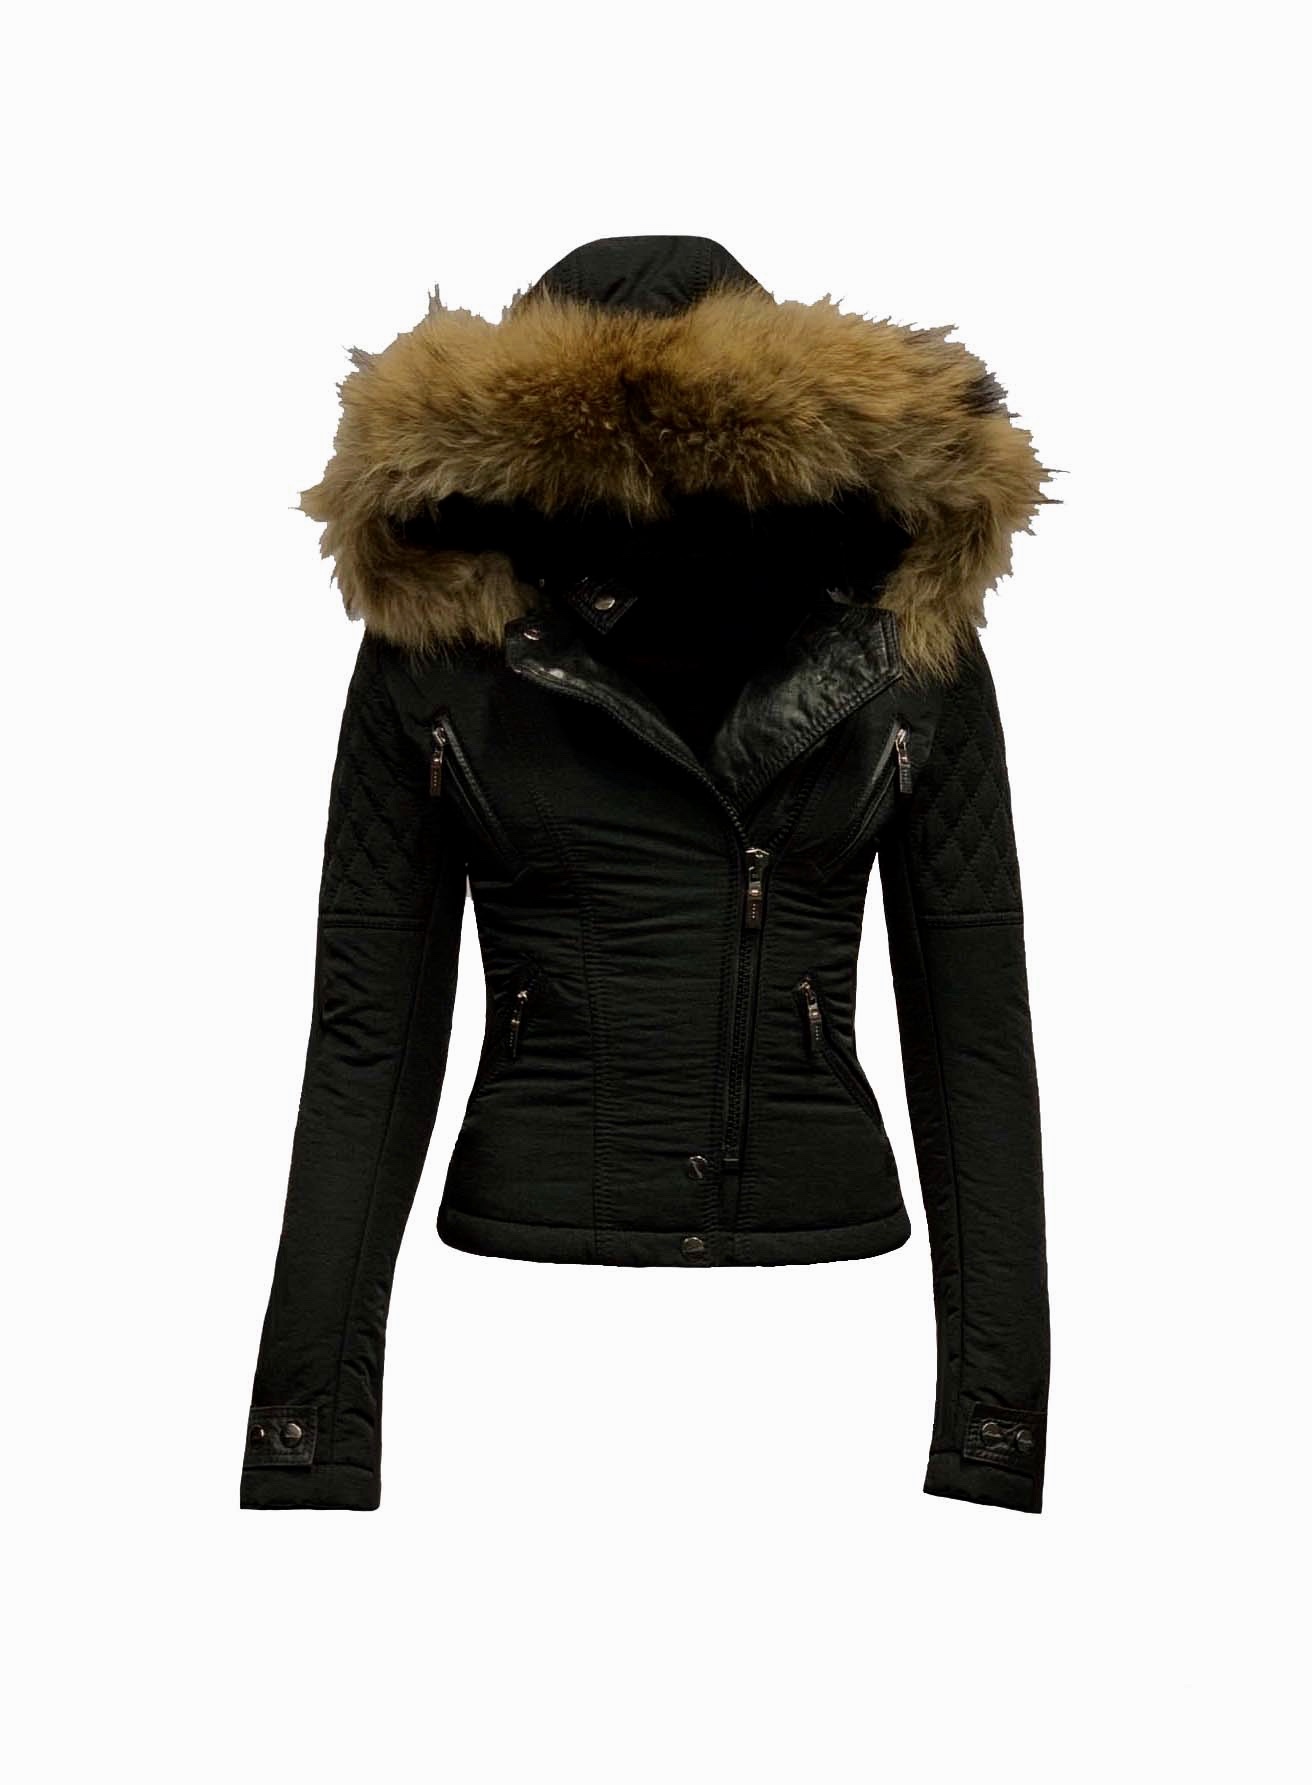 toetje Wakker worden Politieagent Zwart winter dames jas met afneembaar bontkraag -Alecantti – BK Leder